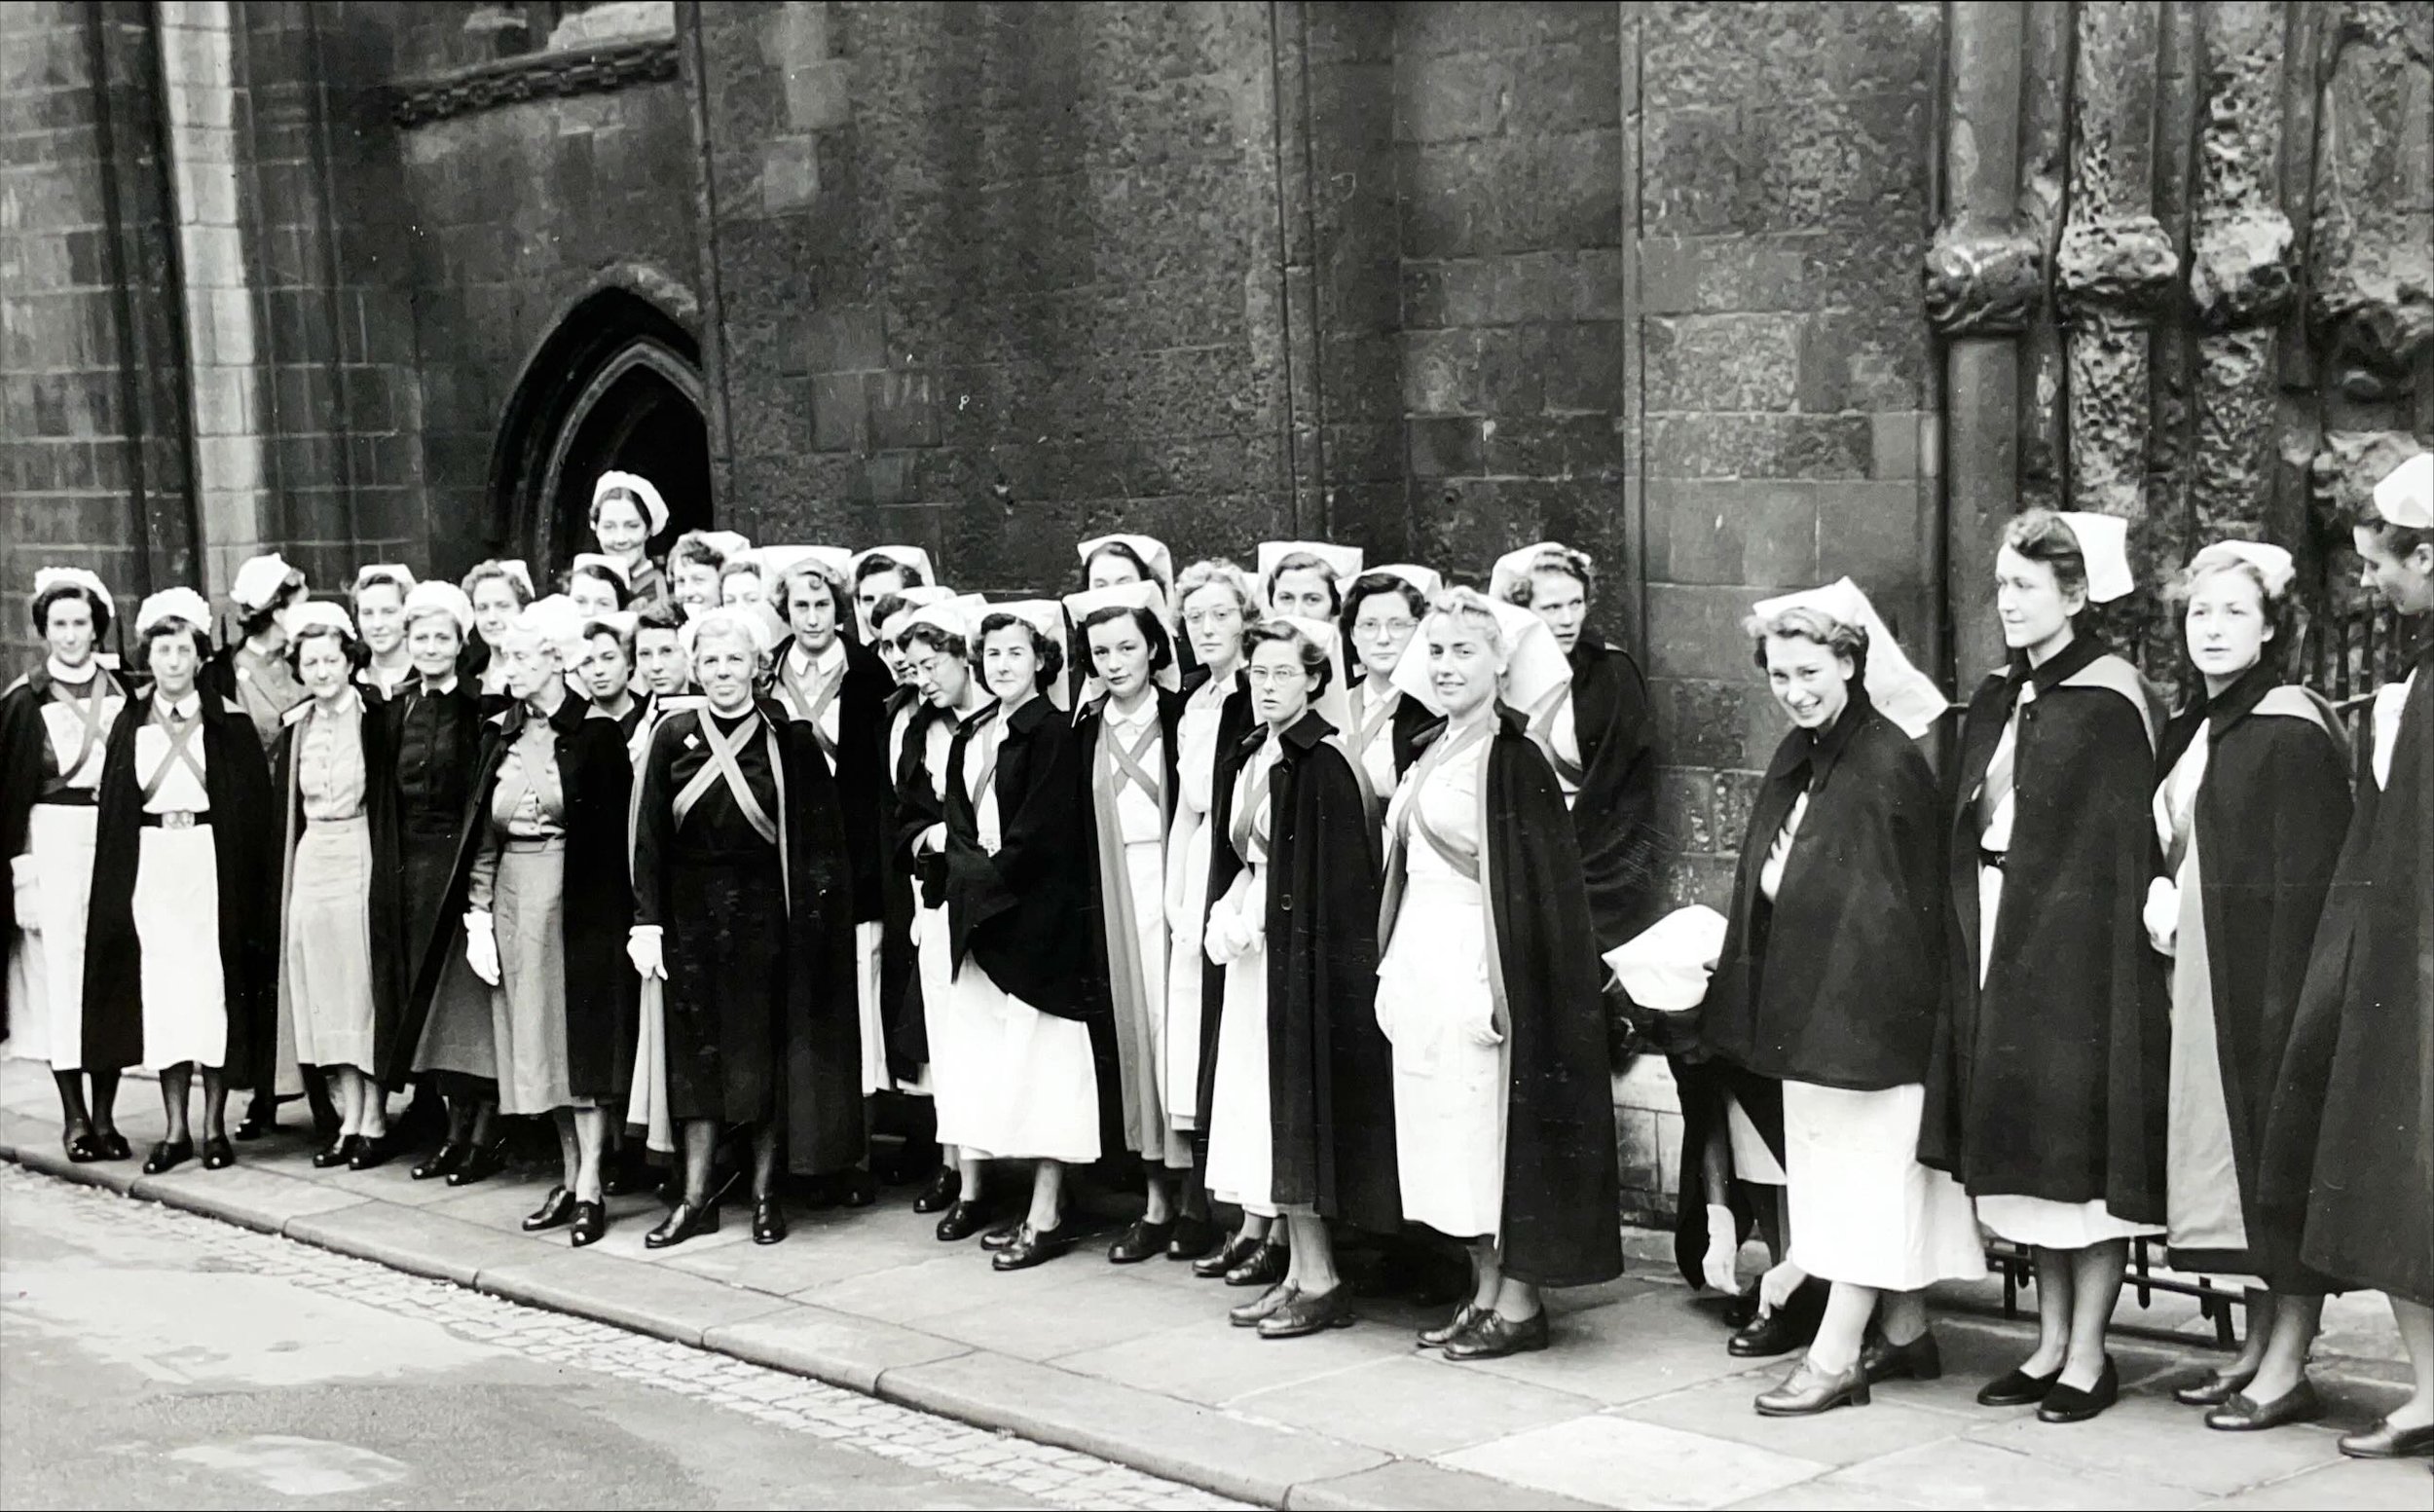 Staff from St Bartholomew's Hospital Sunday Service, October 1954